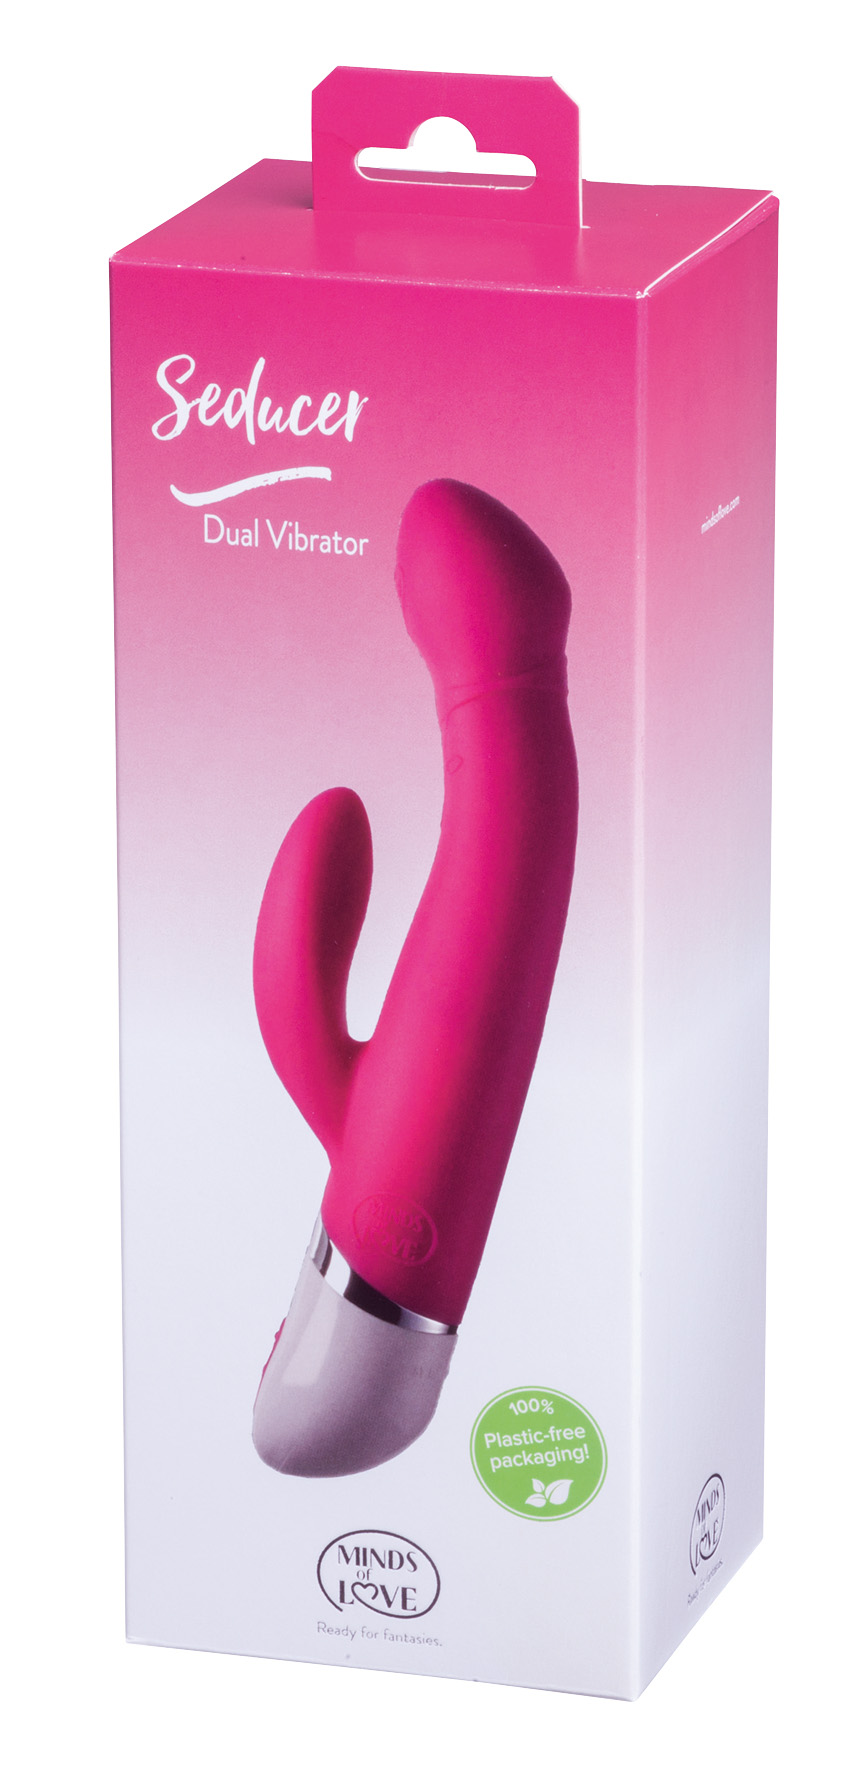 MINDS of LOVE Seducer Dual Vibrator pink